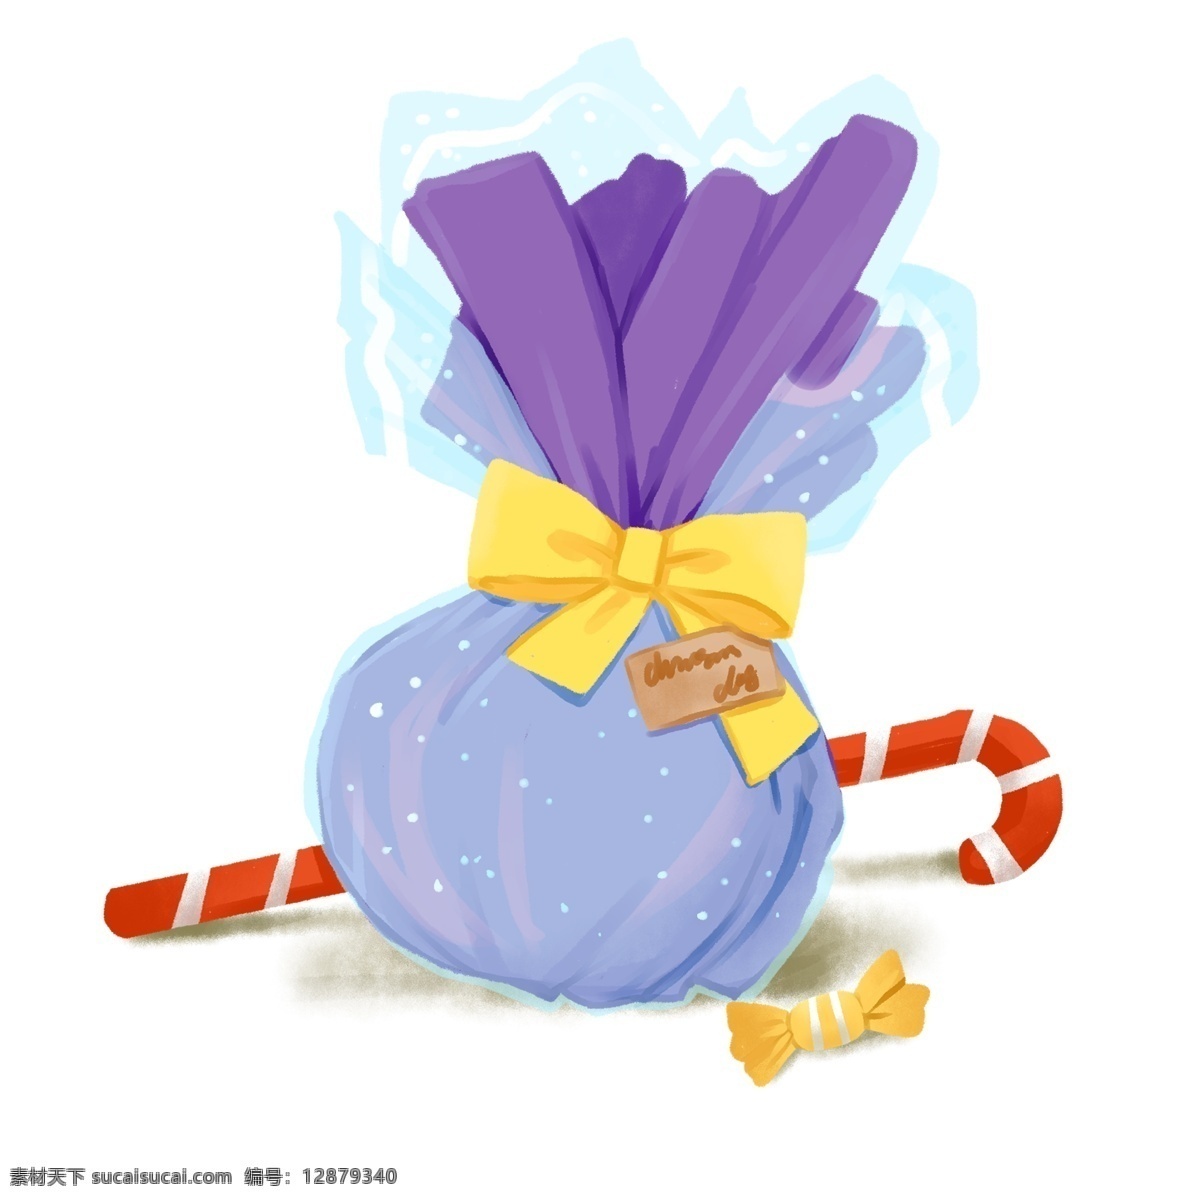 圣诞节 紫色 包装纸 包装 平安 果 礼物 免 抠 元素 平安夜 苹果 糖拐杖 糖果 节日 传统 西方 贺卡 卡通 冷色系 蓝色